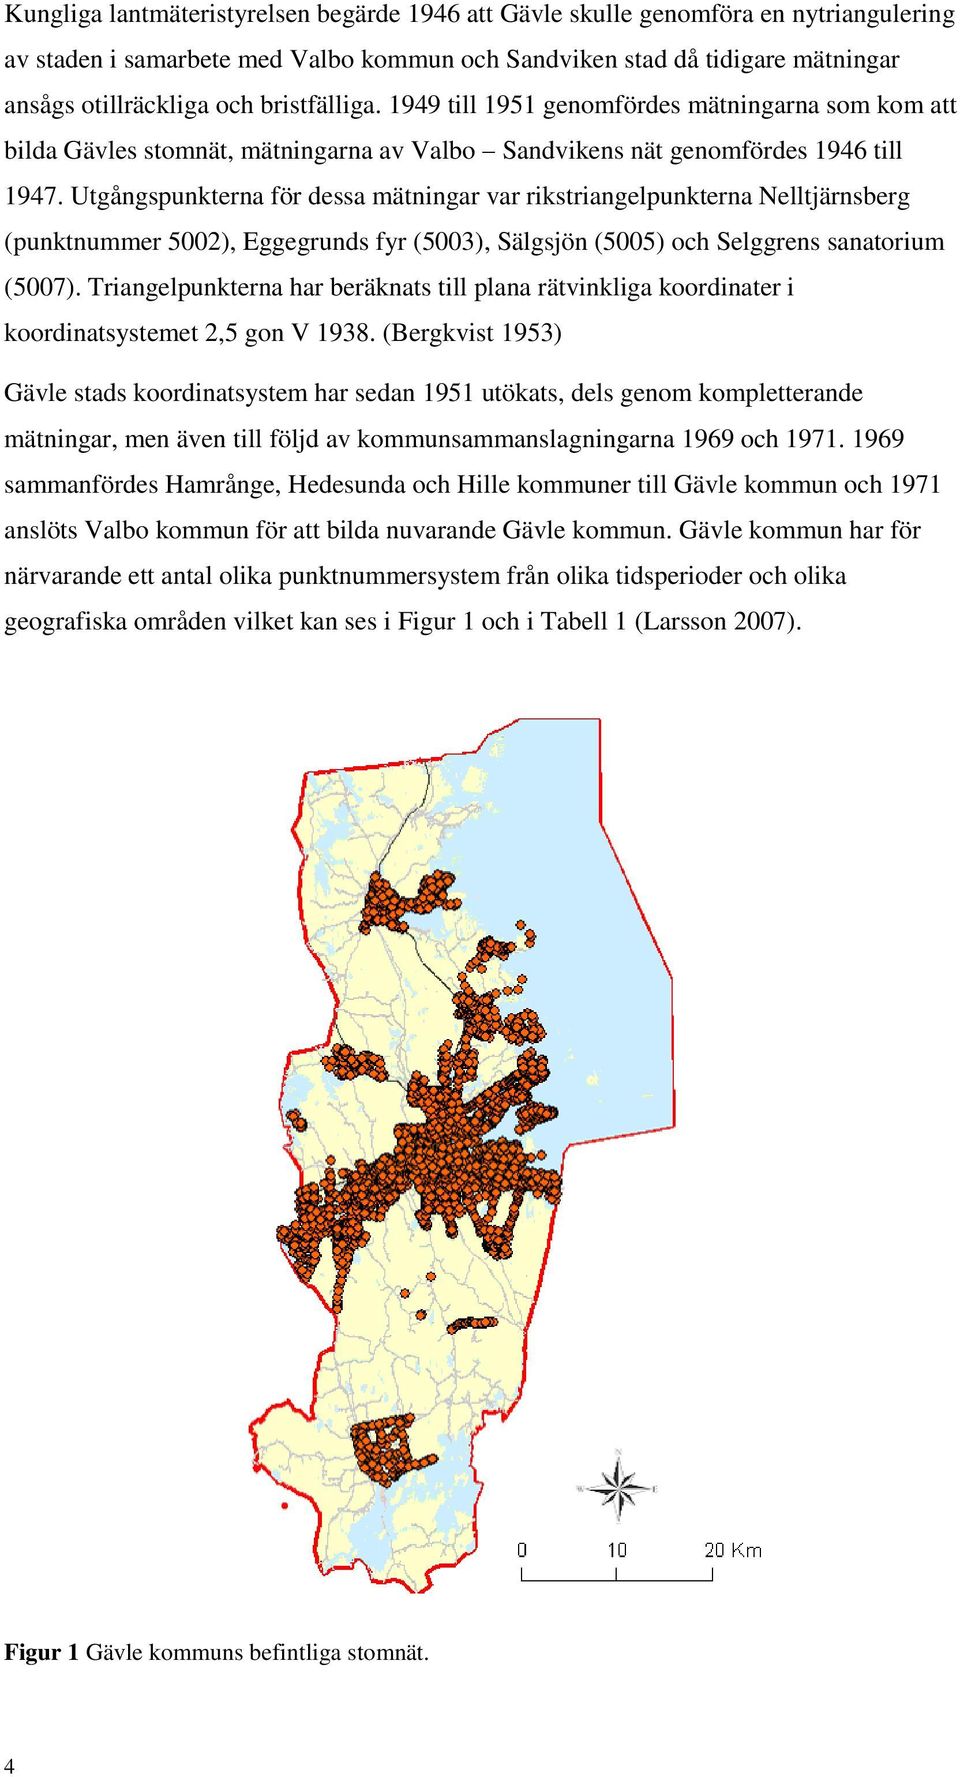 Utgångspunkterna för dessa mätningar var rikstriangelpunkterna Nelltjärnsberg (punktnummer 5002), Eggegrunds fyr (5003), Sälgsjön (5005) och Selggrens sanatorium (5007).